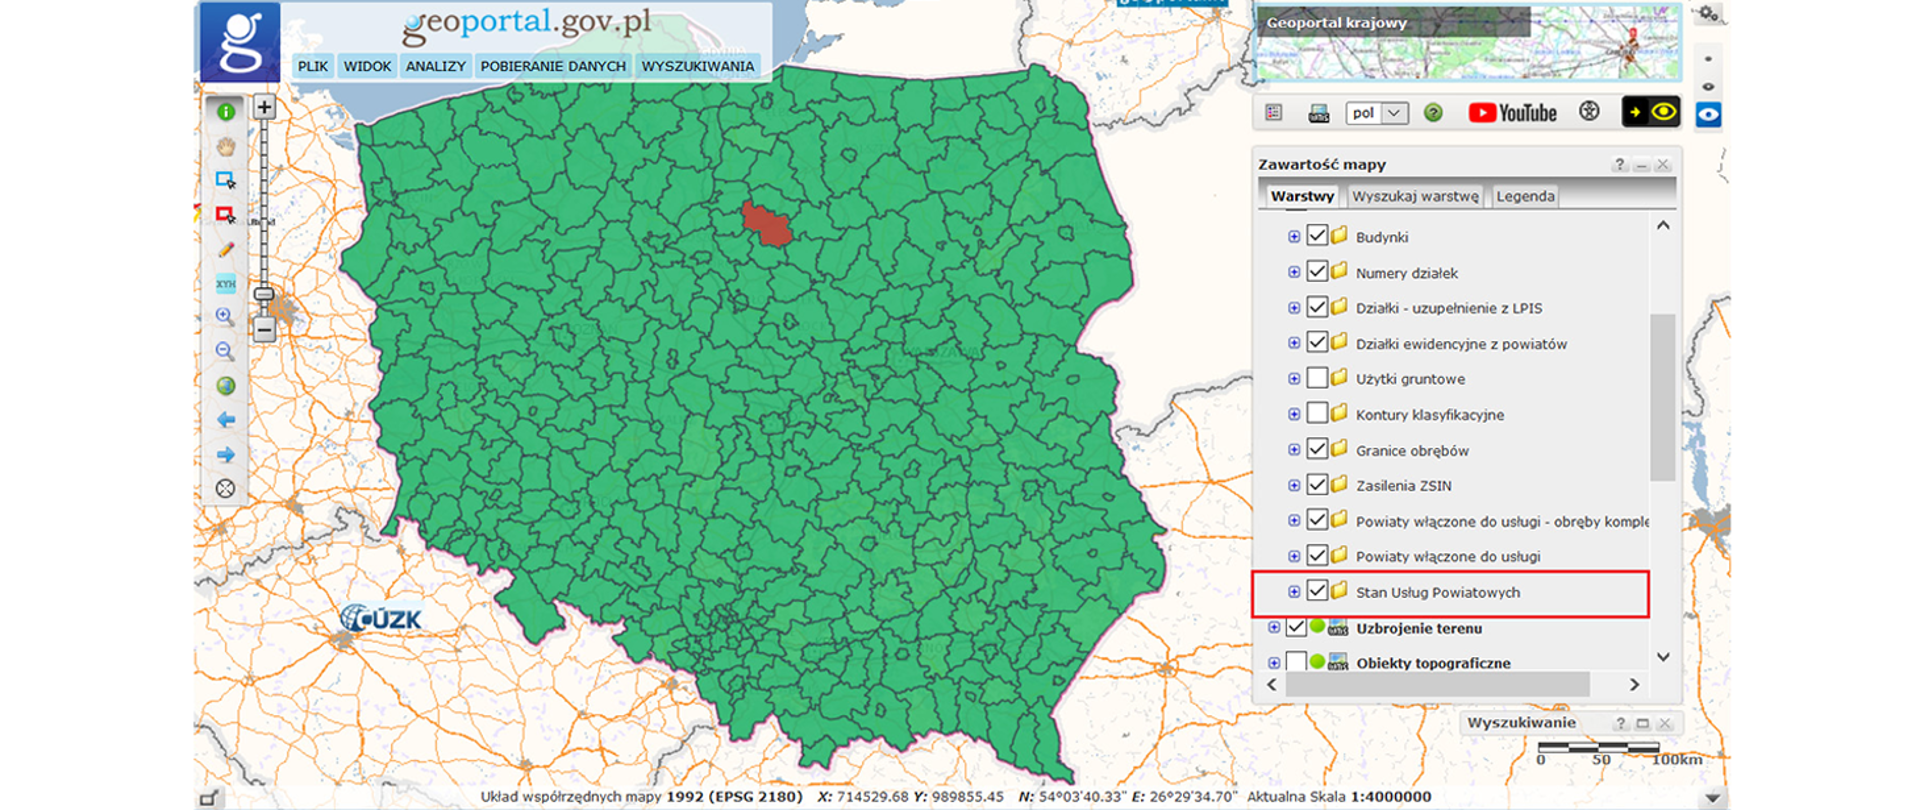 Ilustracja przedstawia zrzut ekranu ze strony geoportal.gov.pl, na którym znajduje się mapa Polski z podziałem na powiaty. Powiat brodnicki oznaczony jest kolorem czerwonym, pozostałe zaś na zielono.